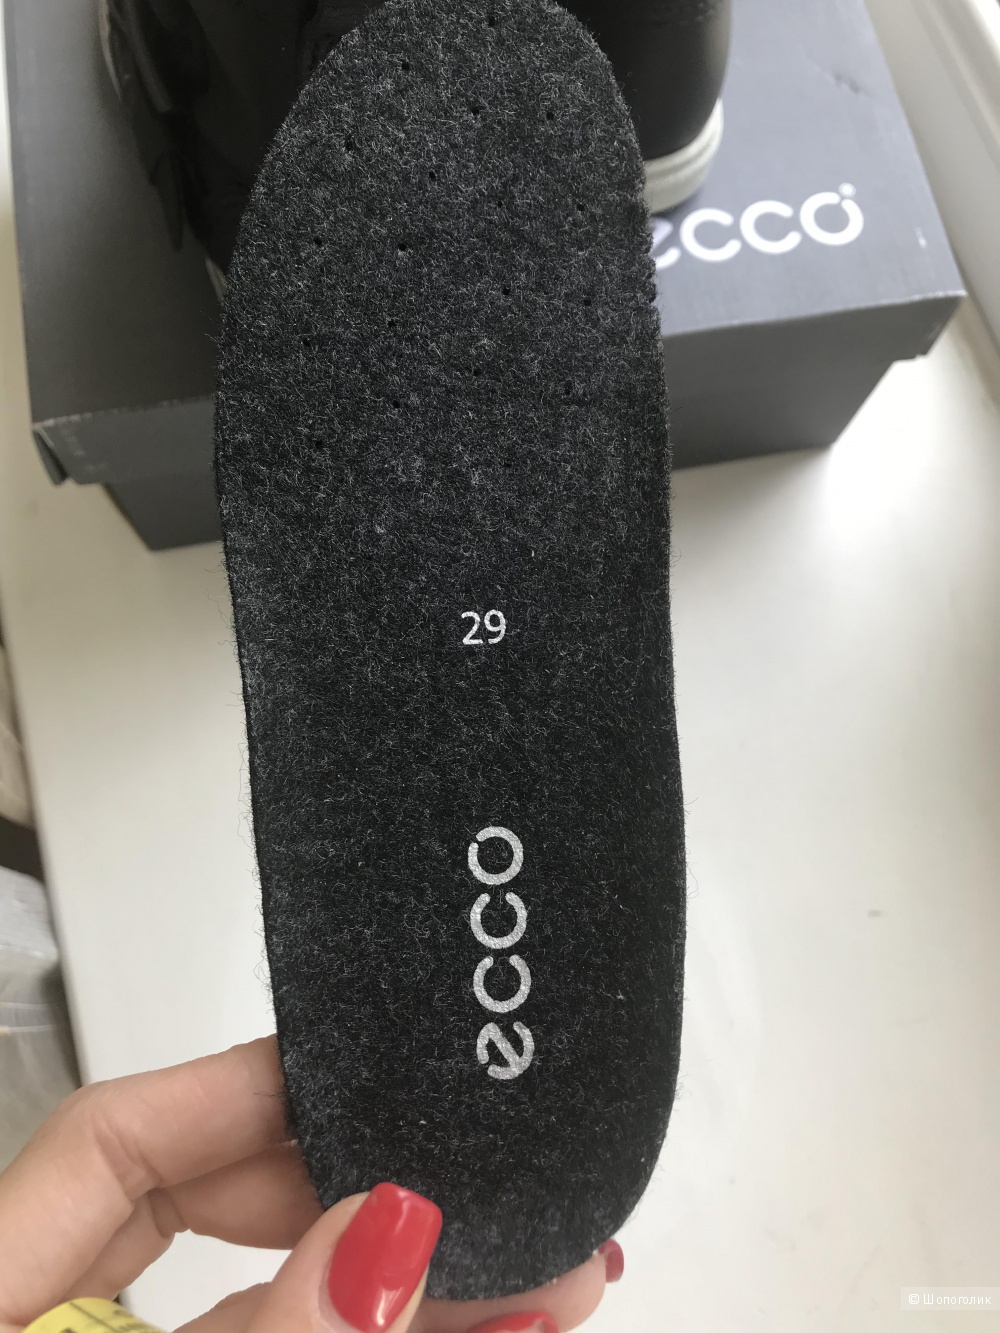 Ботинки ECCO 29 размер